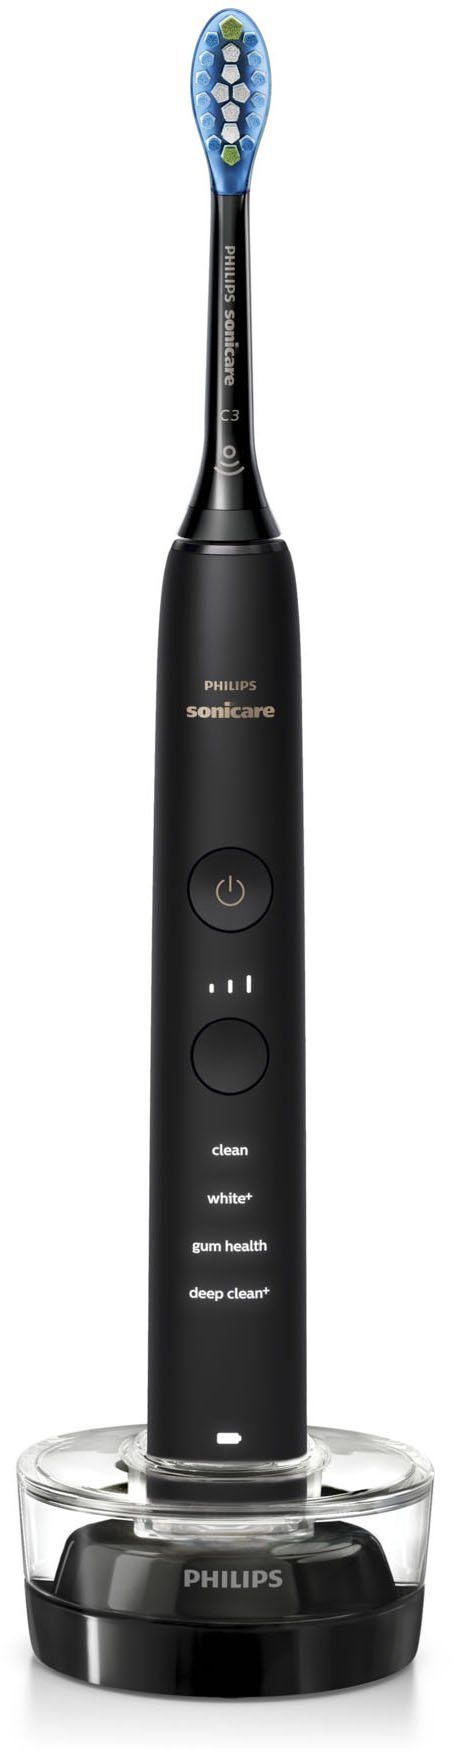 Philips Sonicare Elektrische Zahnbürste mit St., Aufsteckbürsten: DiamondClean Schalltechnologie, HX9914/57, 2er 2 9000 Ladeglas Set